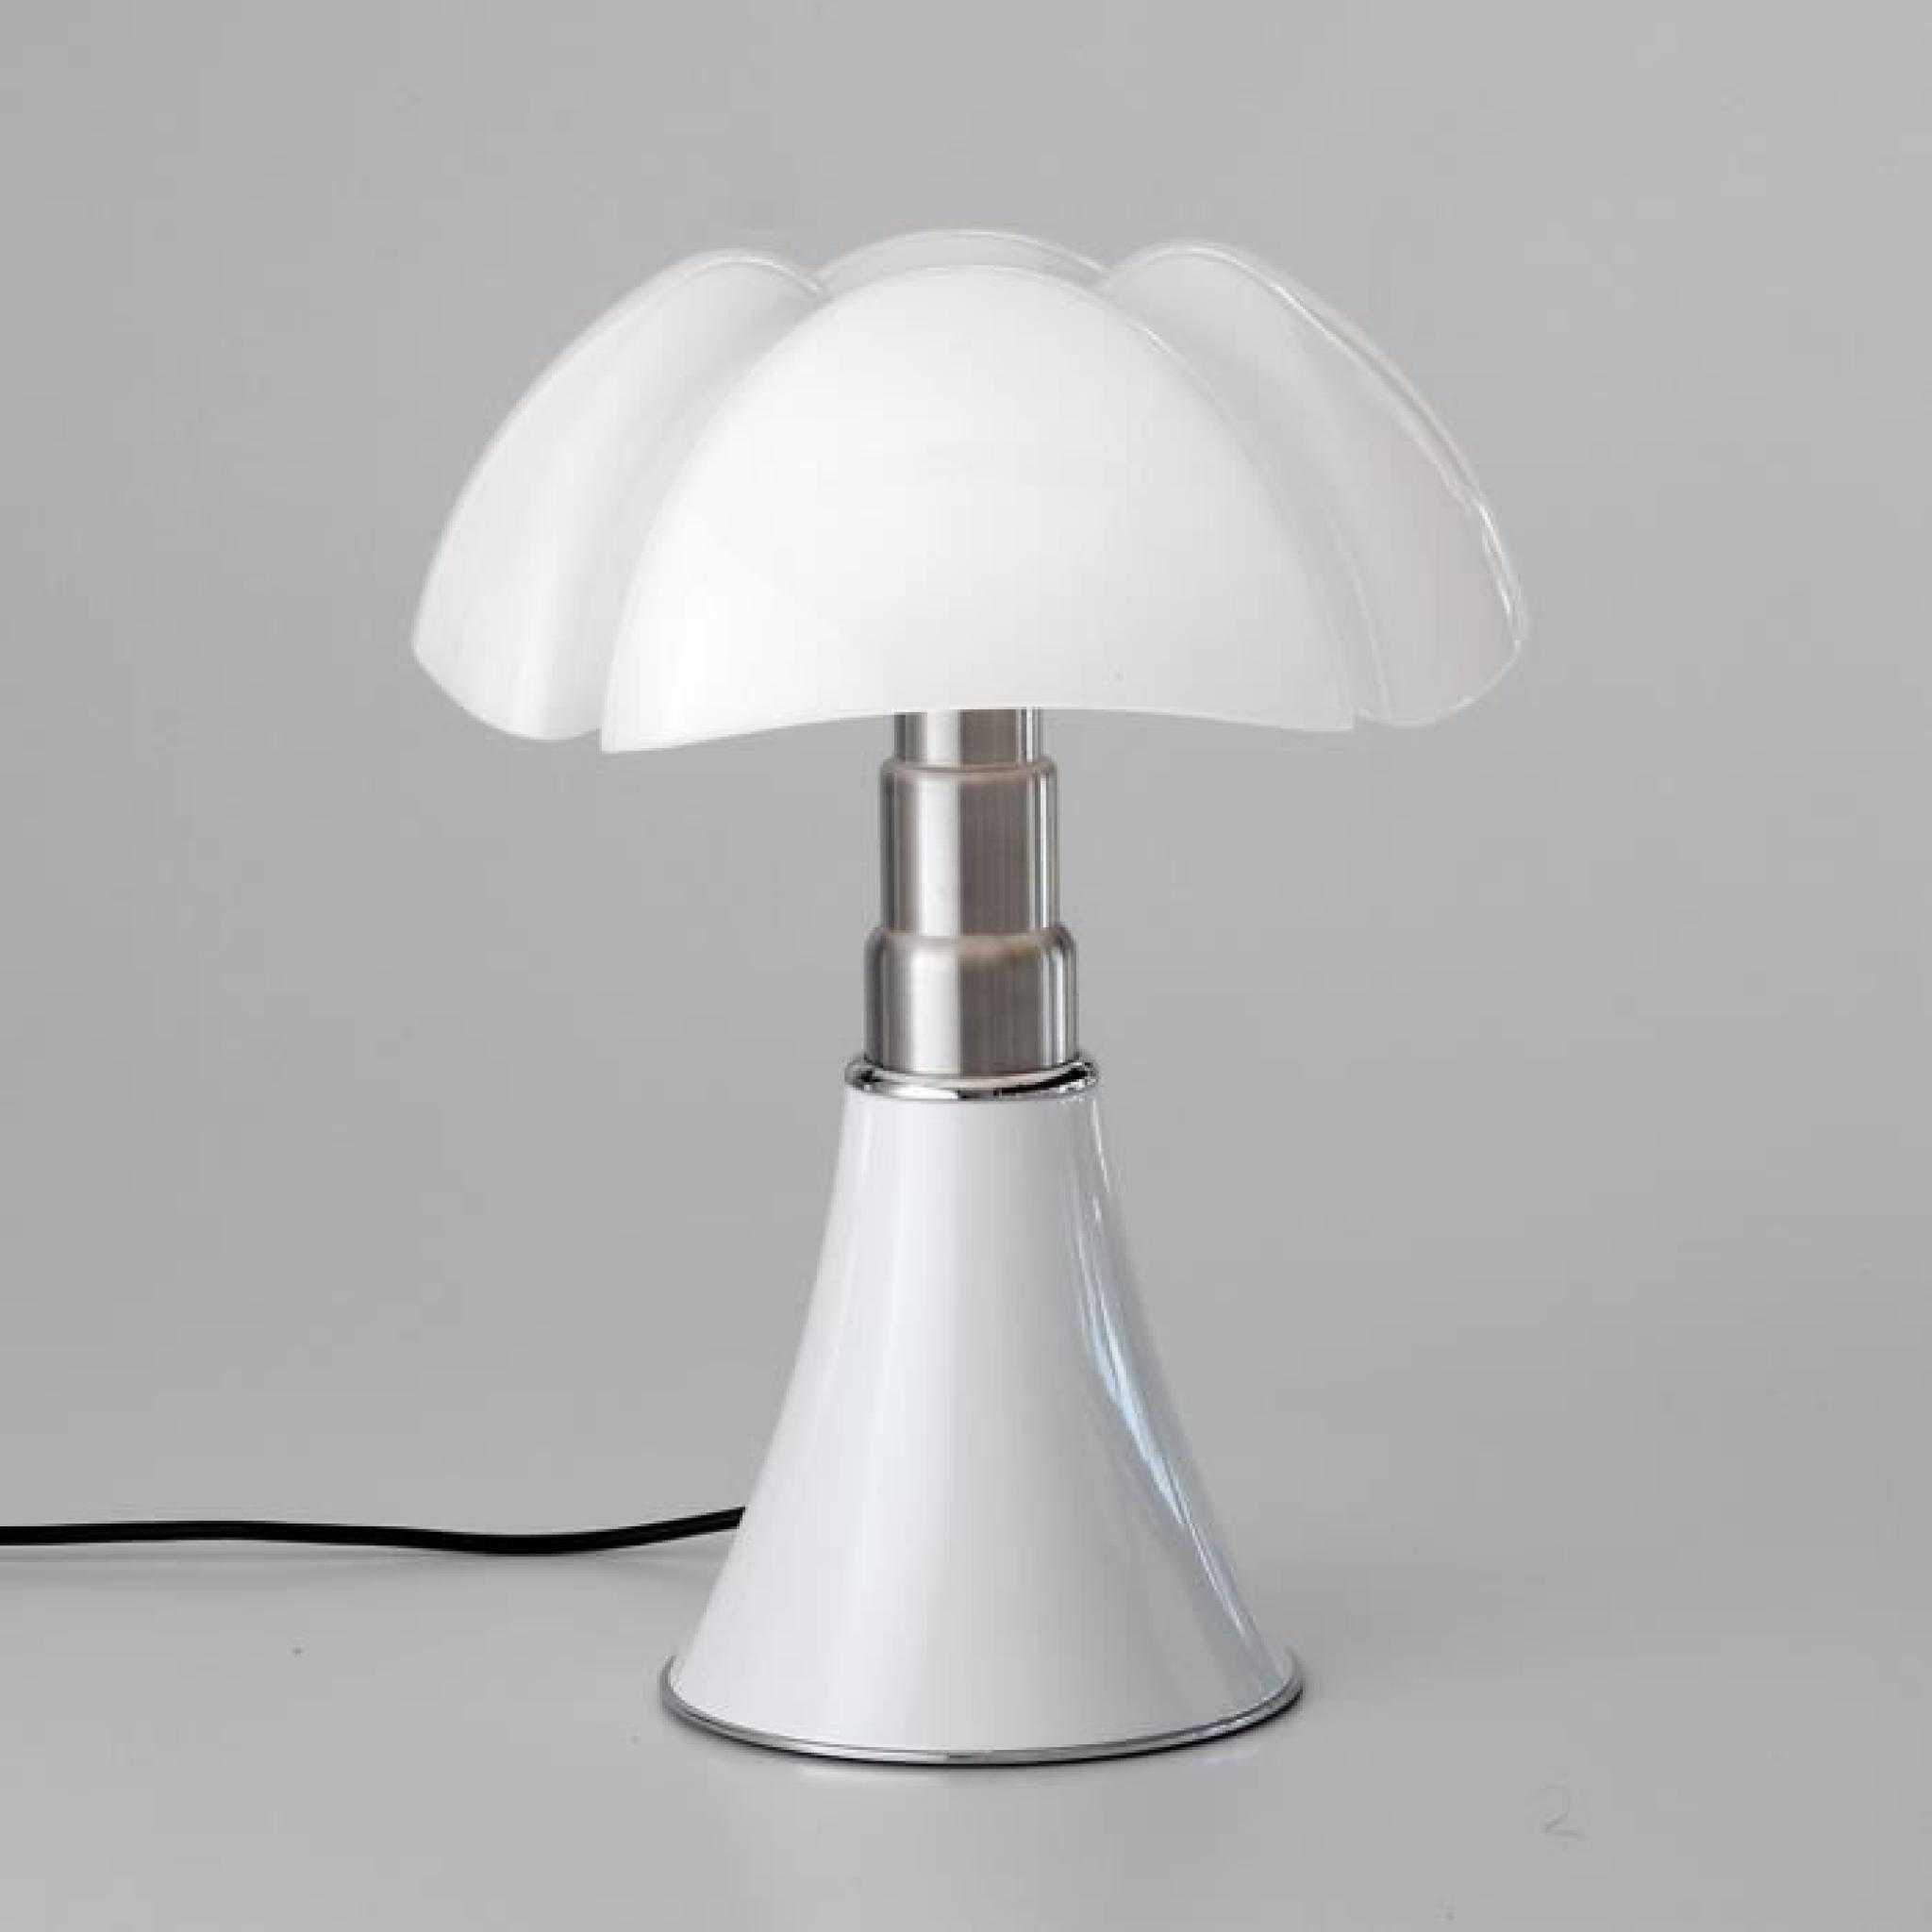 Lampe Blanc LED H35cm - MINI PIPISTRELLO MARTINELLI